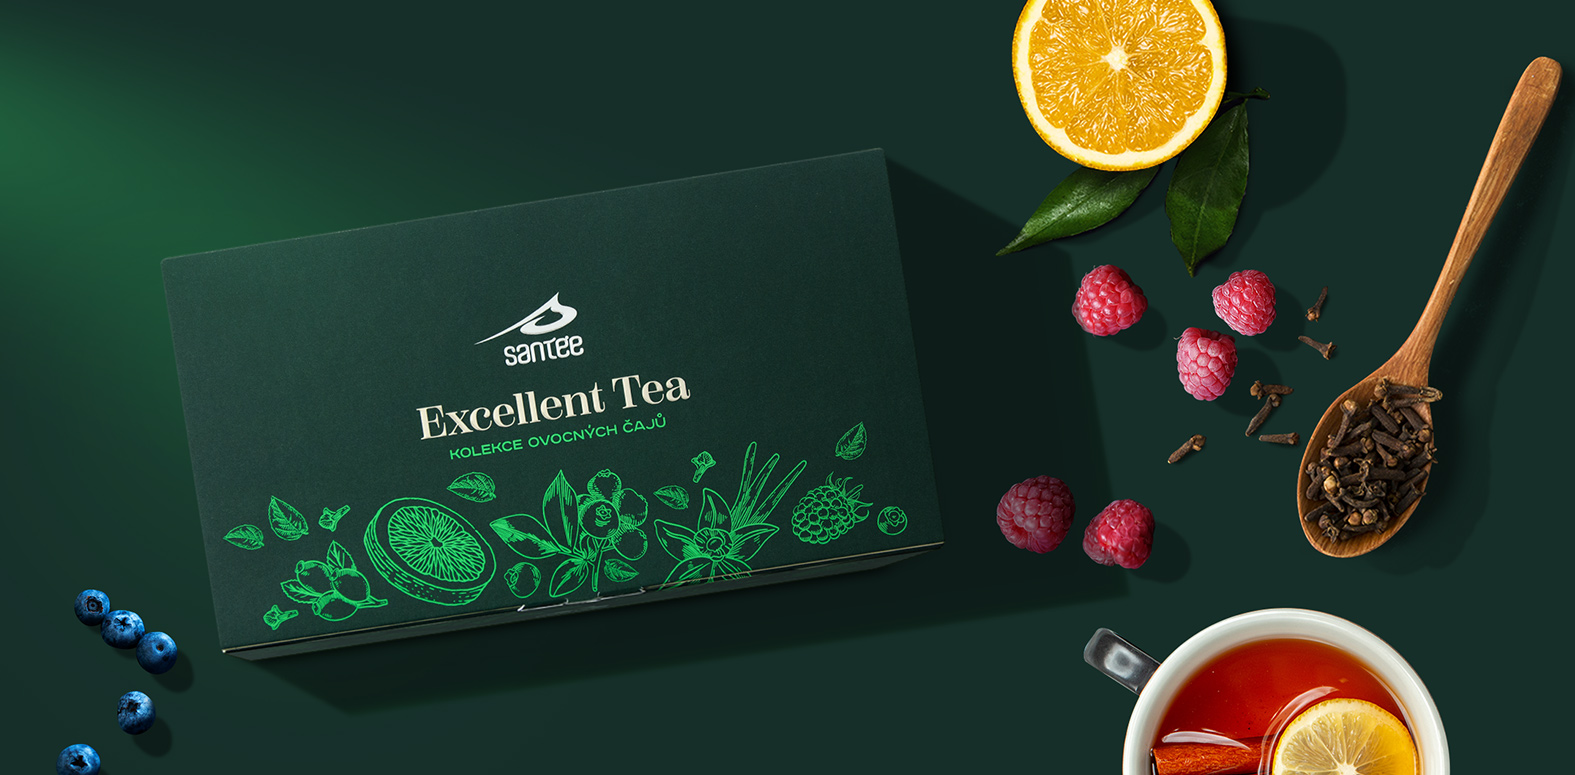 Dárková kolekce ovocných čajů Santée Excellent Tea na stole s ovocem a lžičkou má povedený návrh obalu